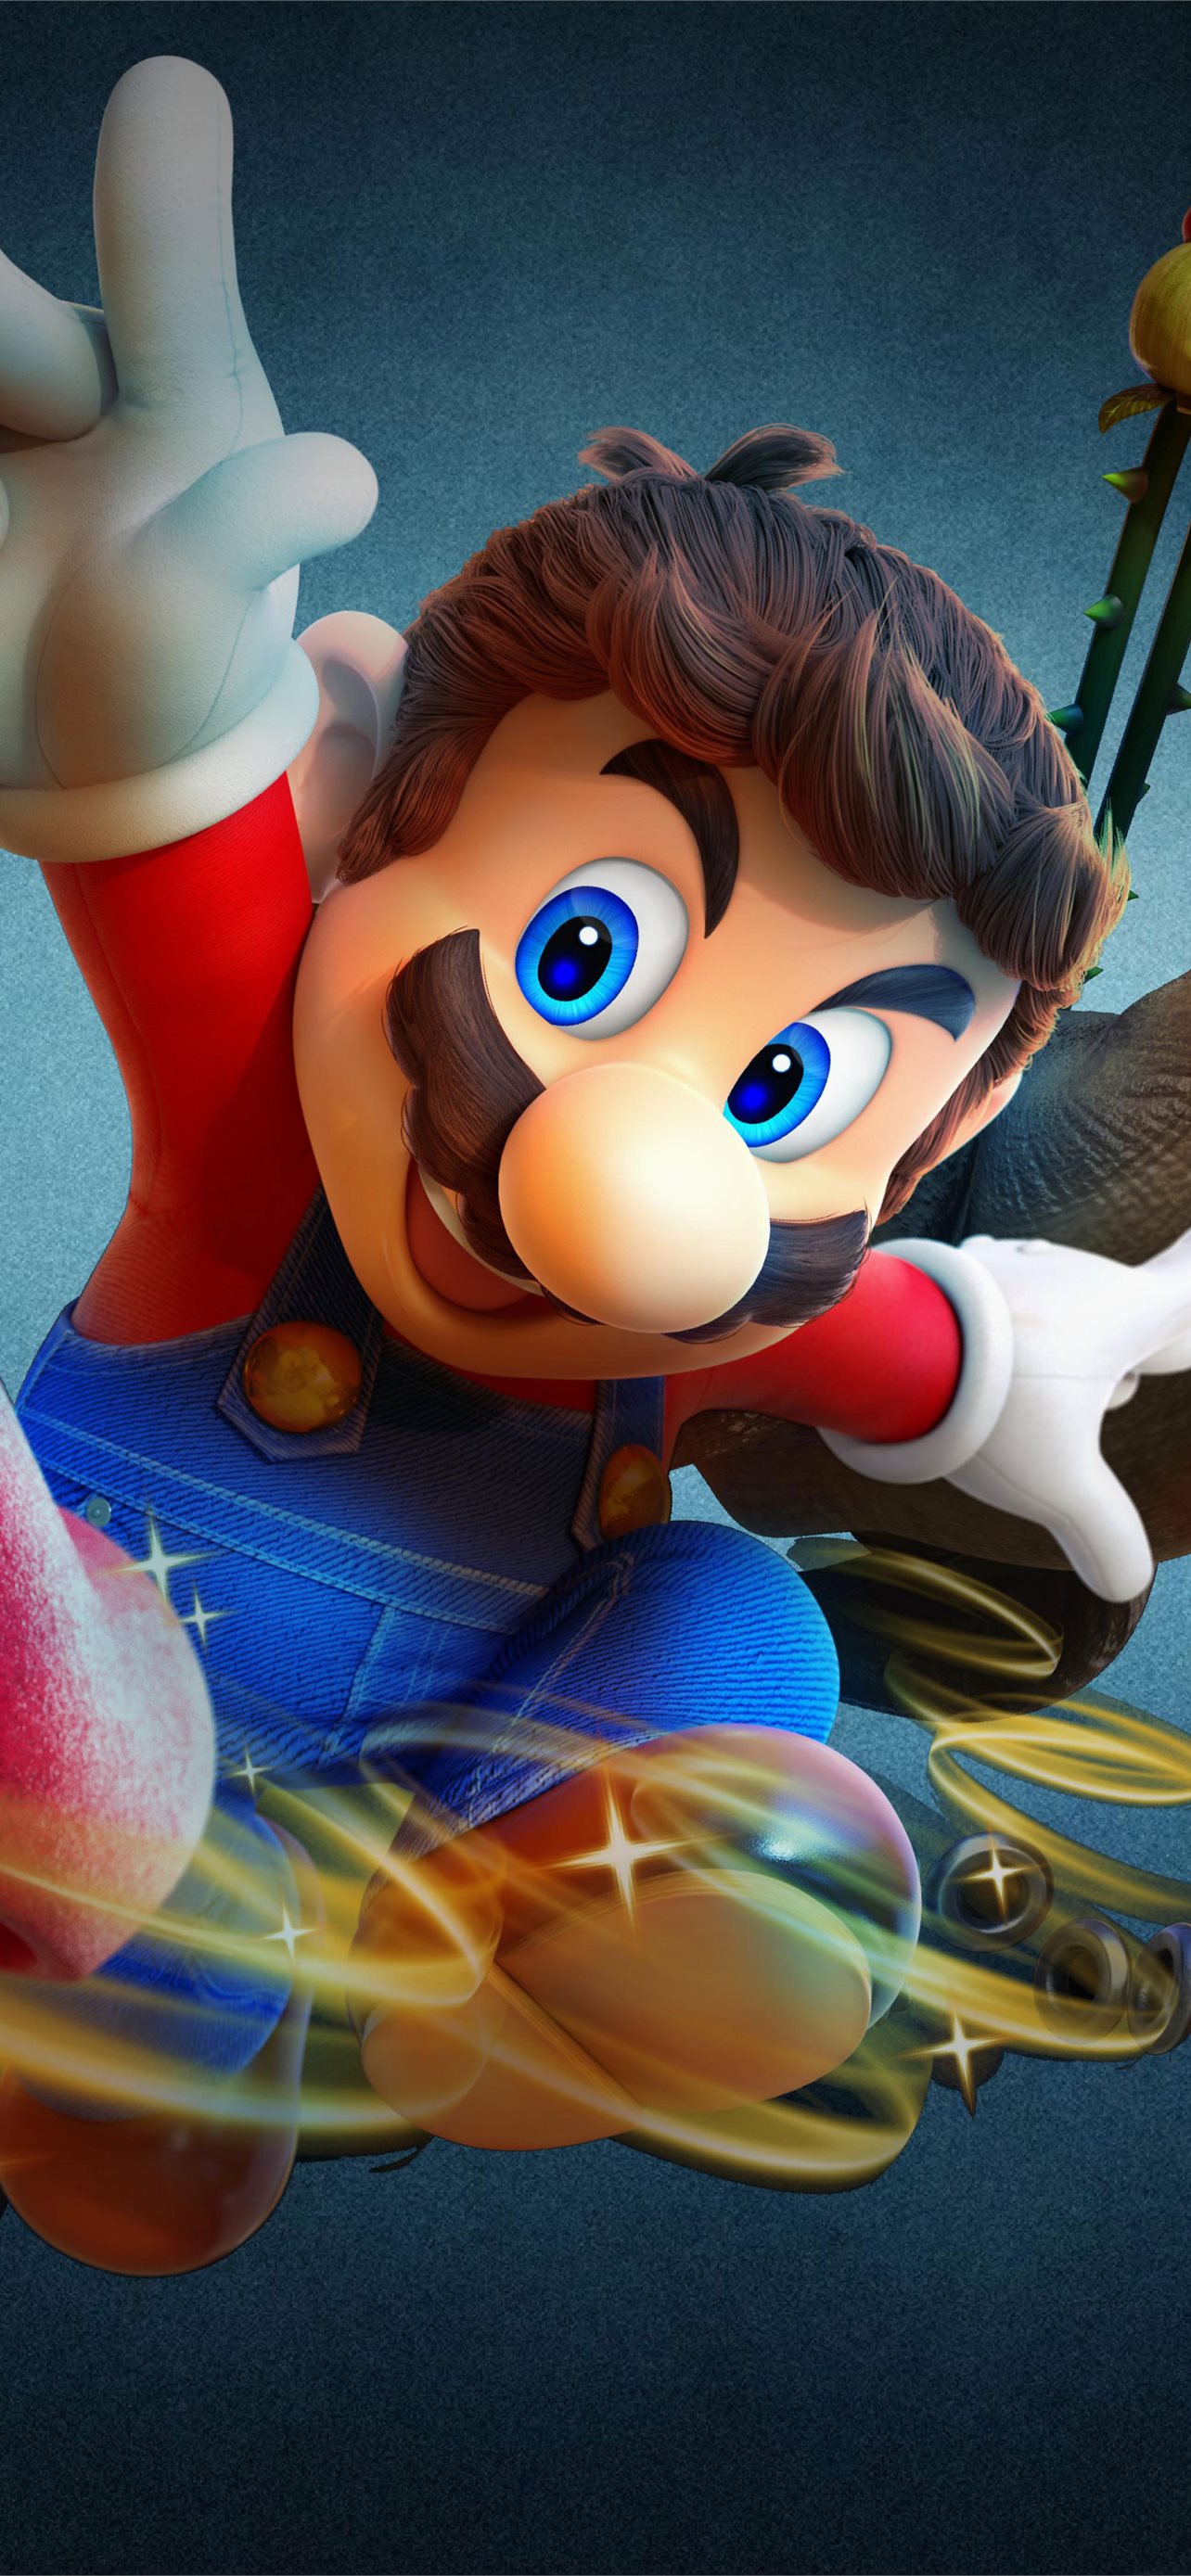 Super Mario Galaxy 2 Wallpapers  Top Những Hình Ảnh Đẹp